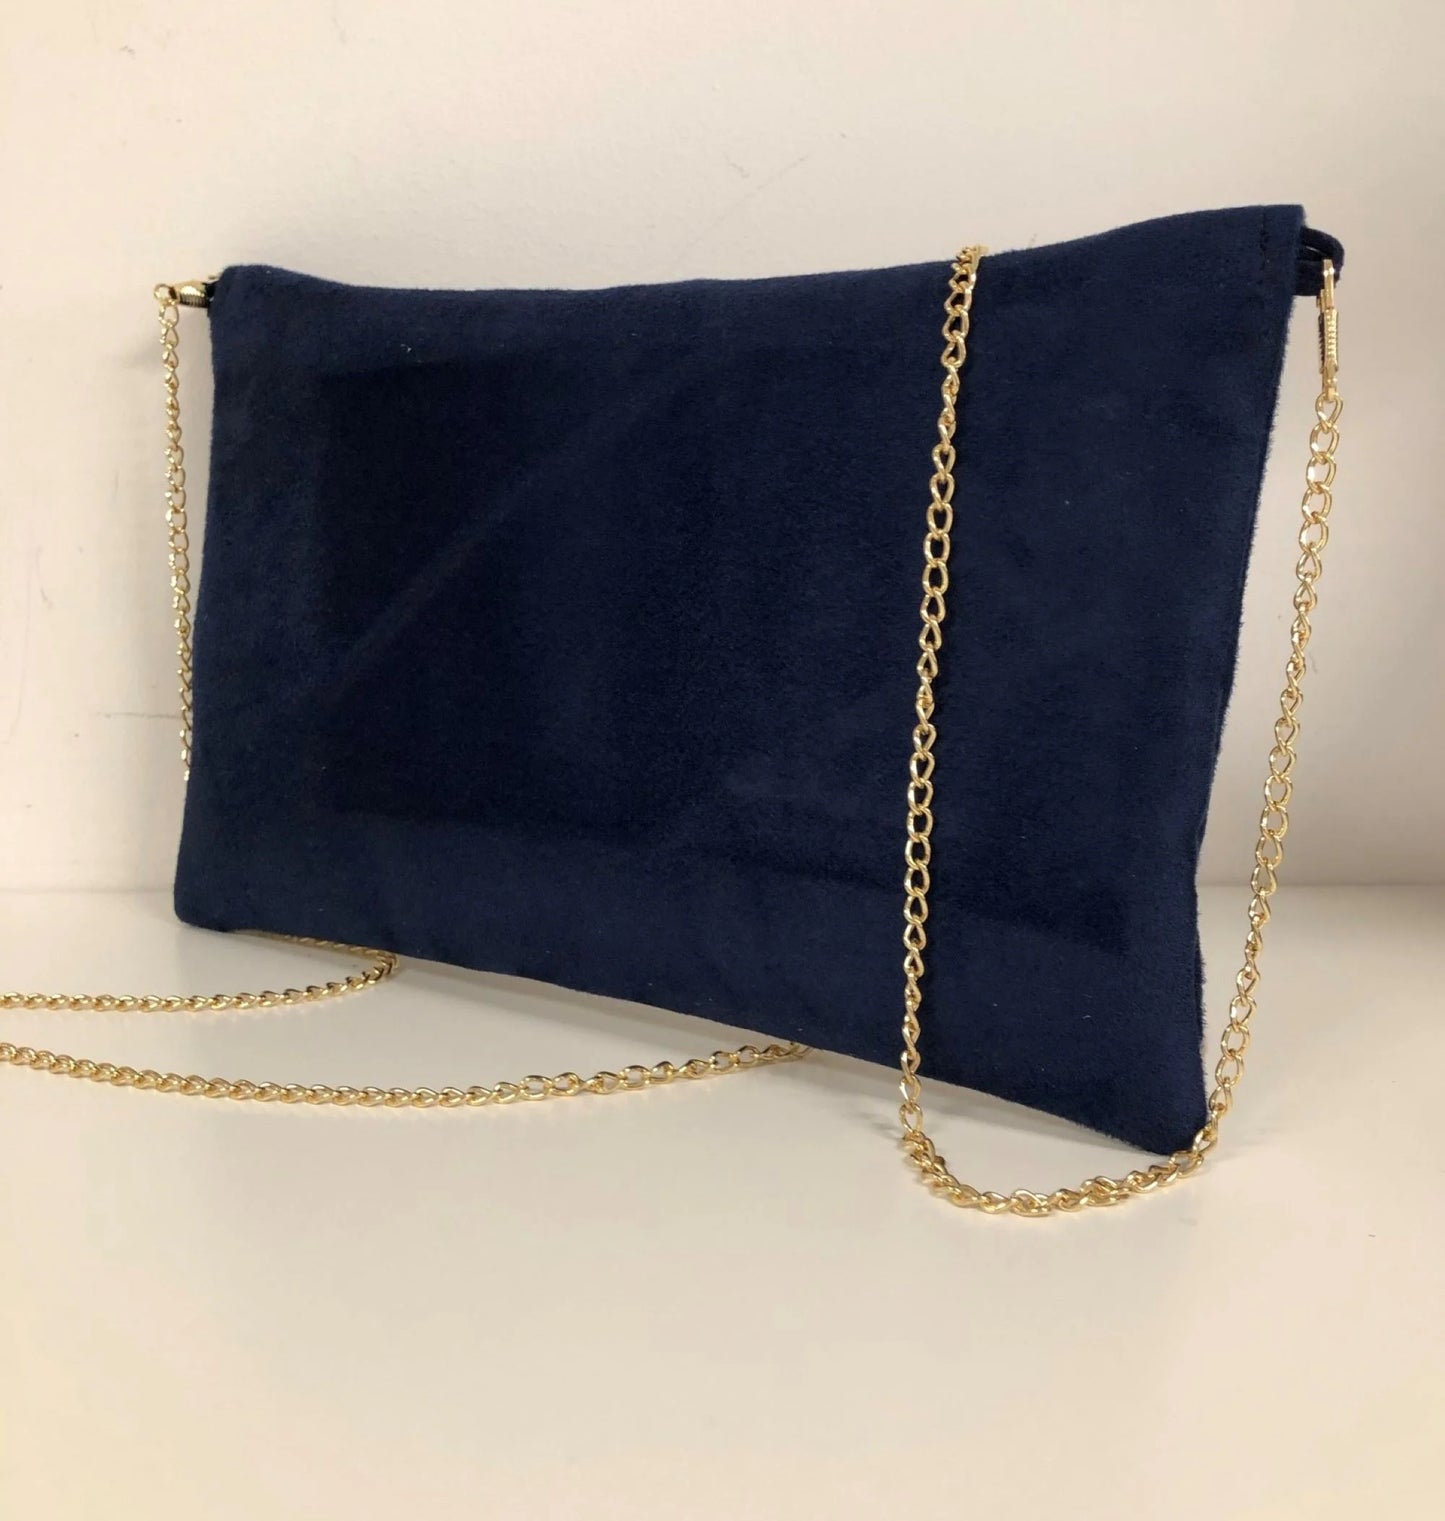 Face arrière du sac pochette Isa bleu marine et lin doré, avec chainette amovible.